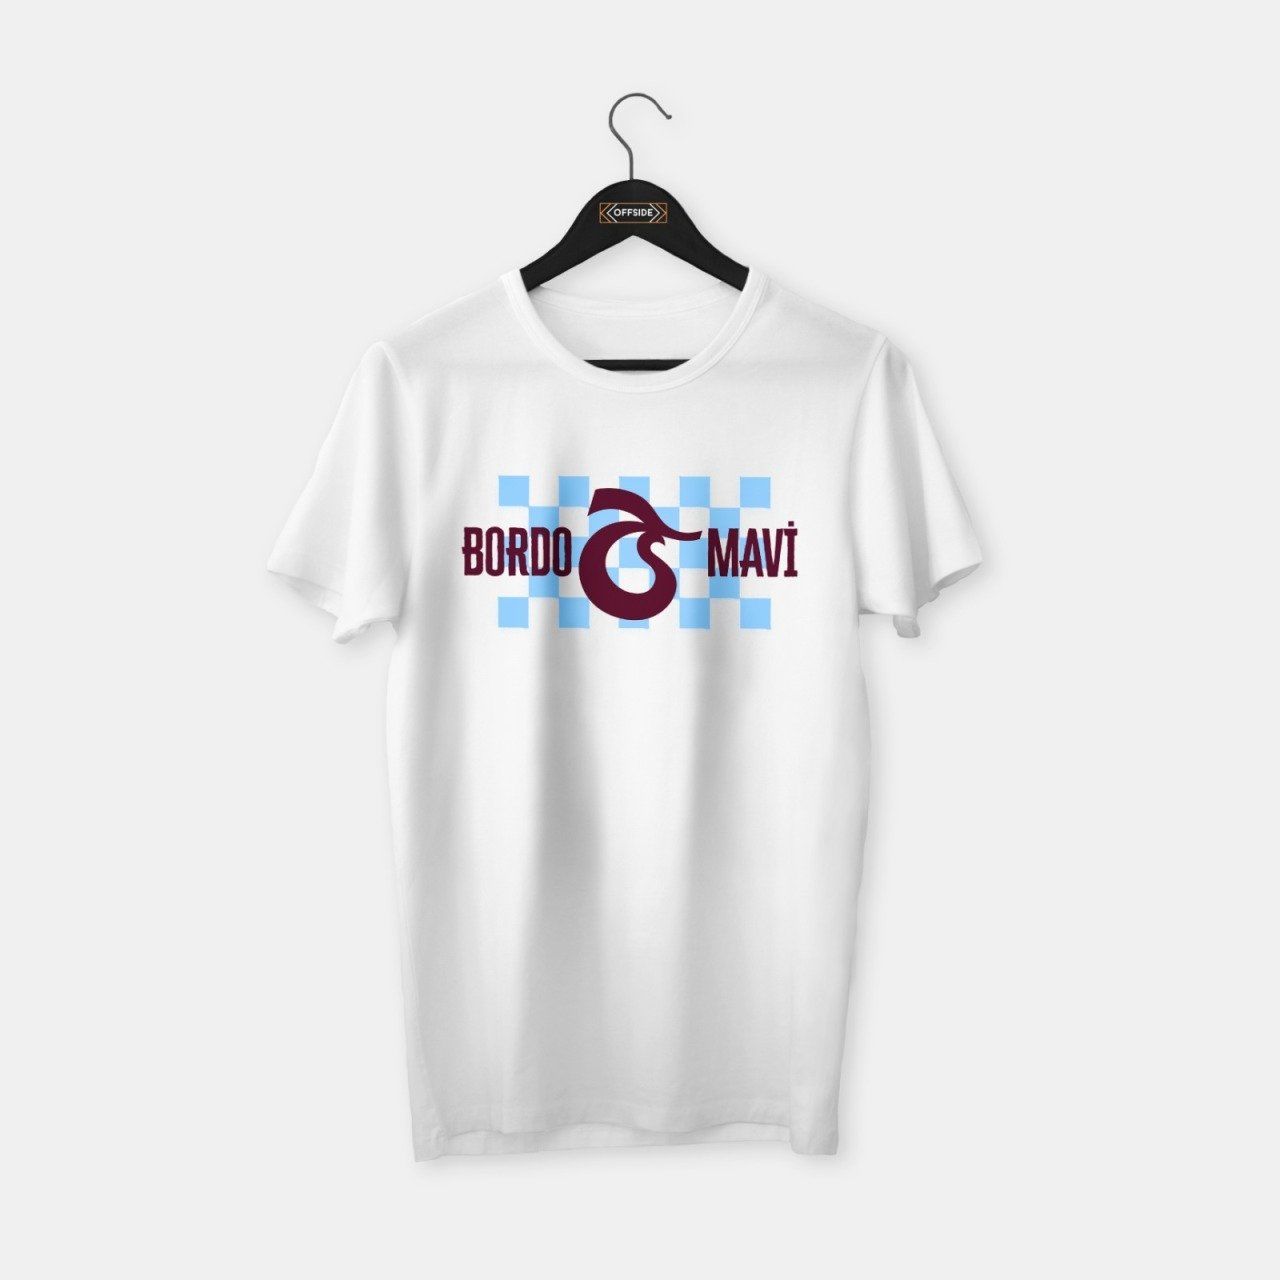 Trabzon Bordo Mavi T-shirt